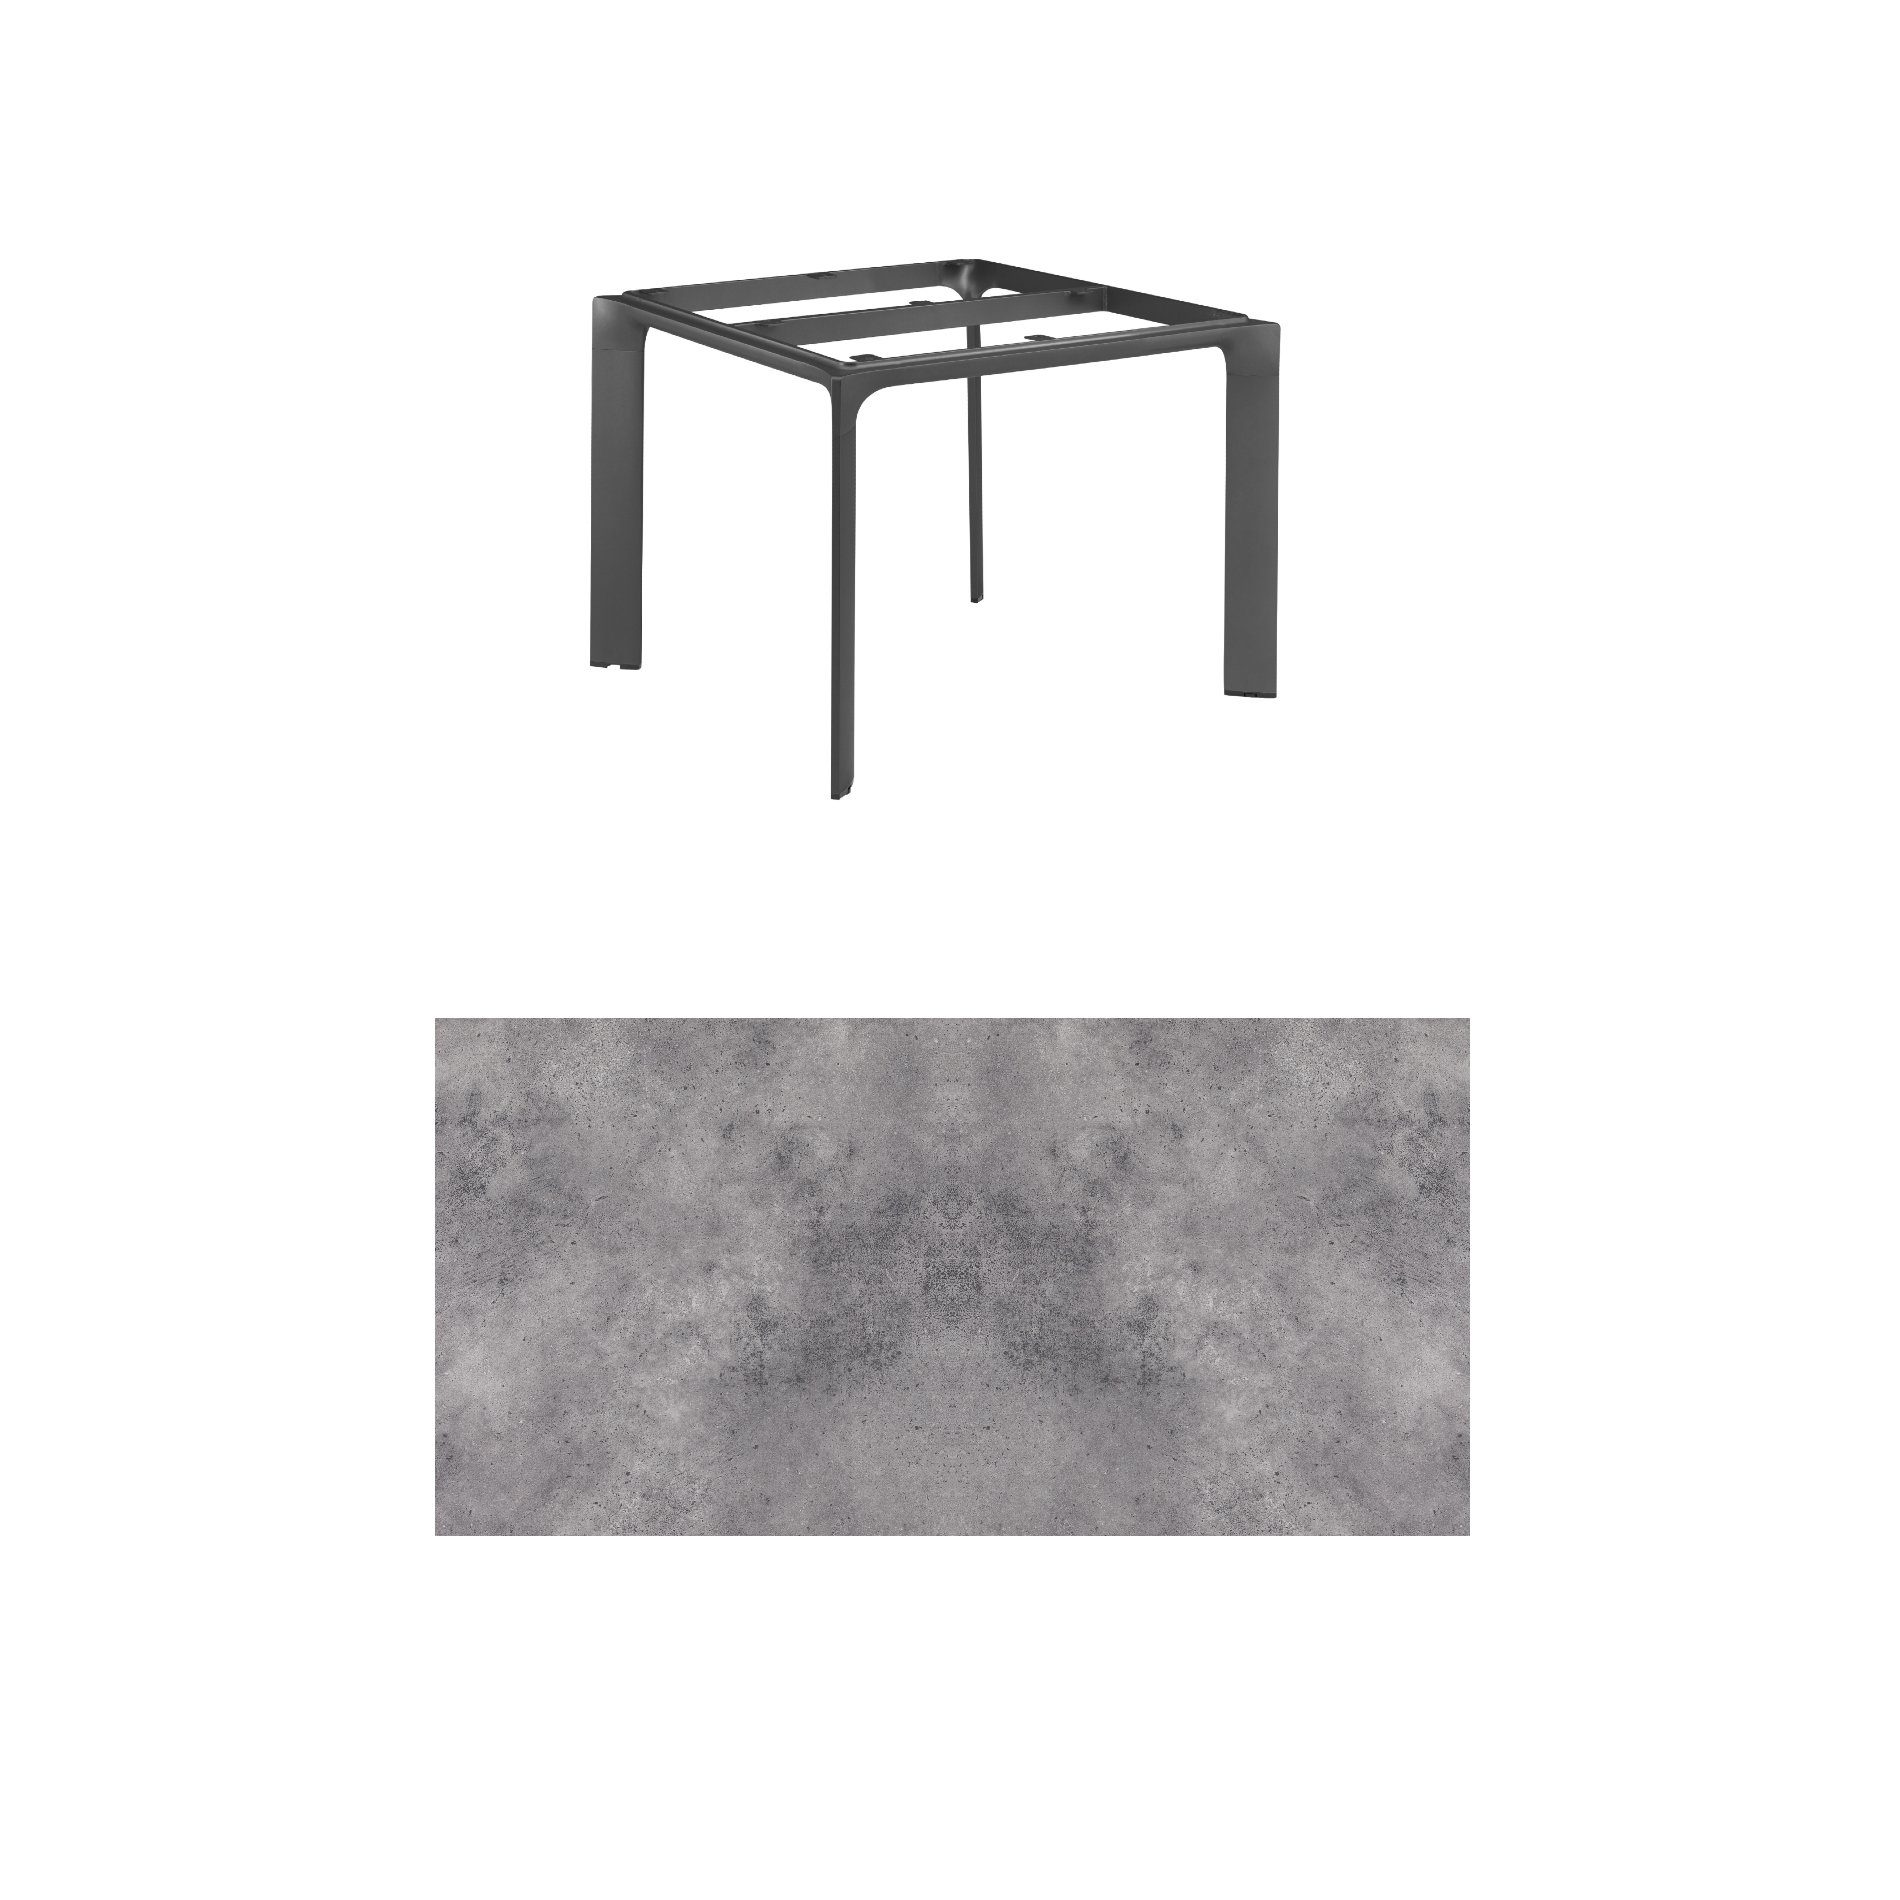 Kettler "Diamond" Tischsystem Gartentisch, Gestell Aluminium anthrazit, Tischplatte HPL anthrazit, 95x95 cm